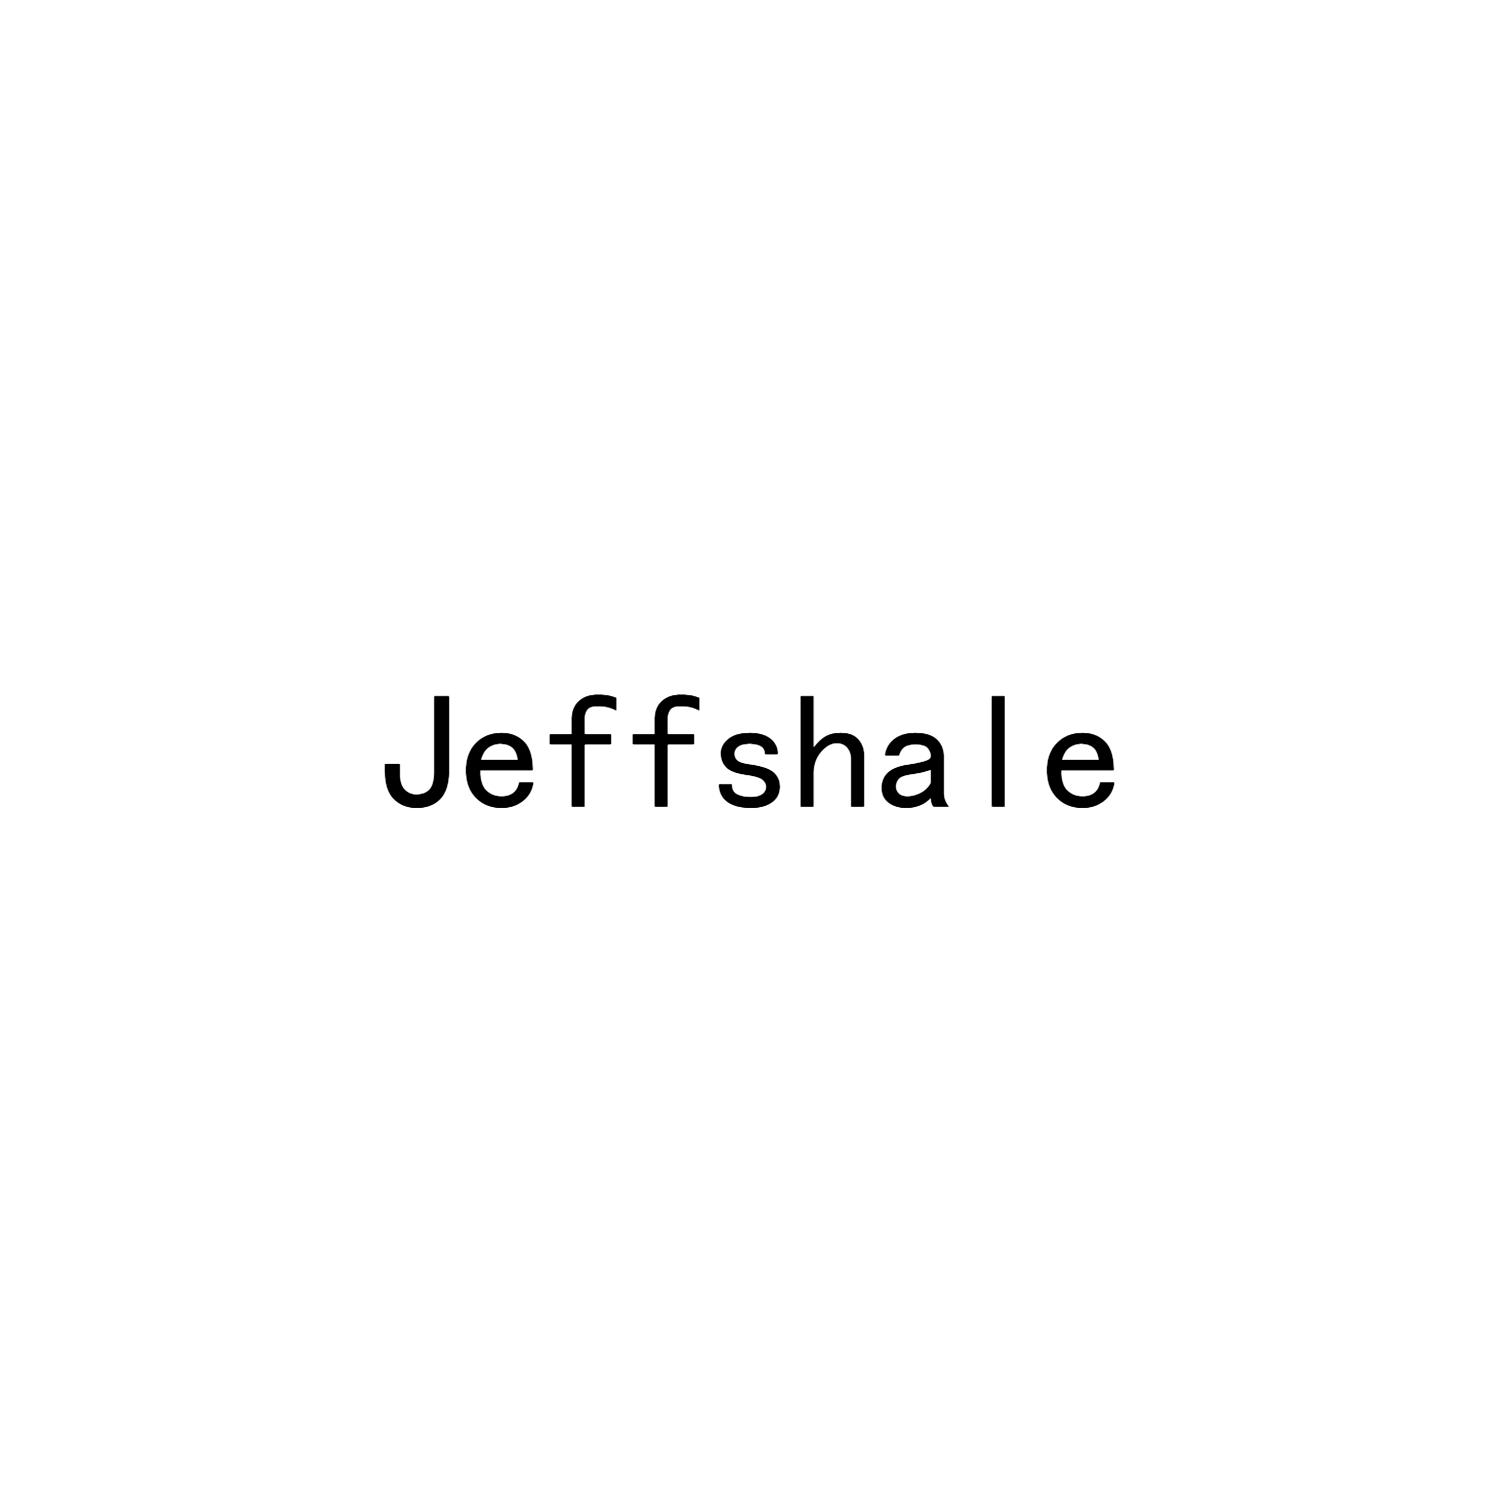 35类-广告销售JEFFSHALE商标转让